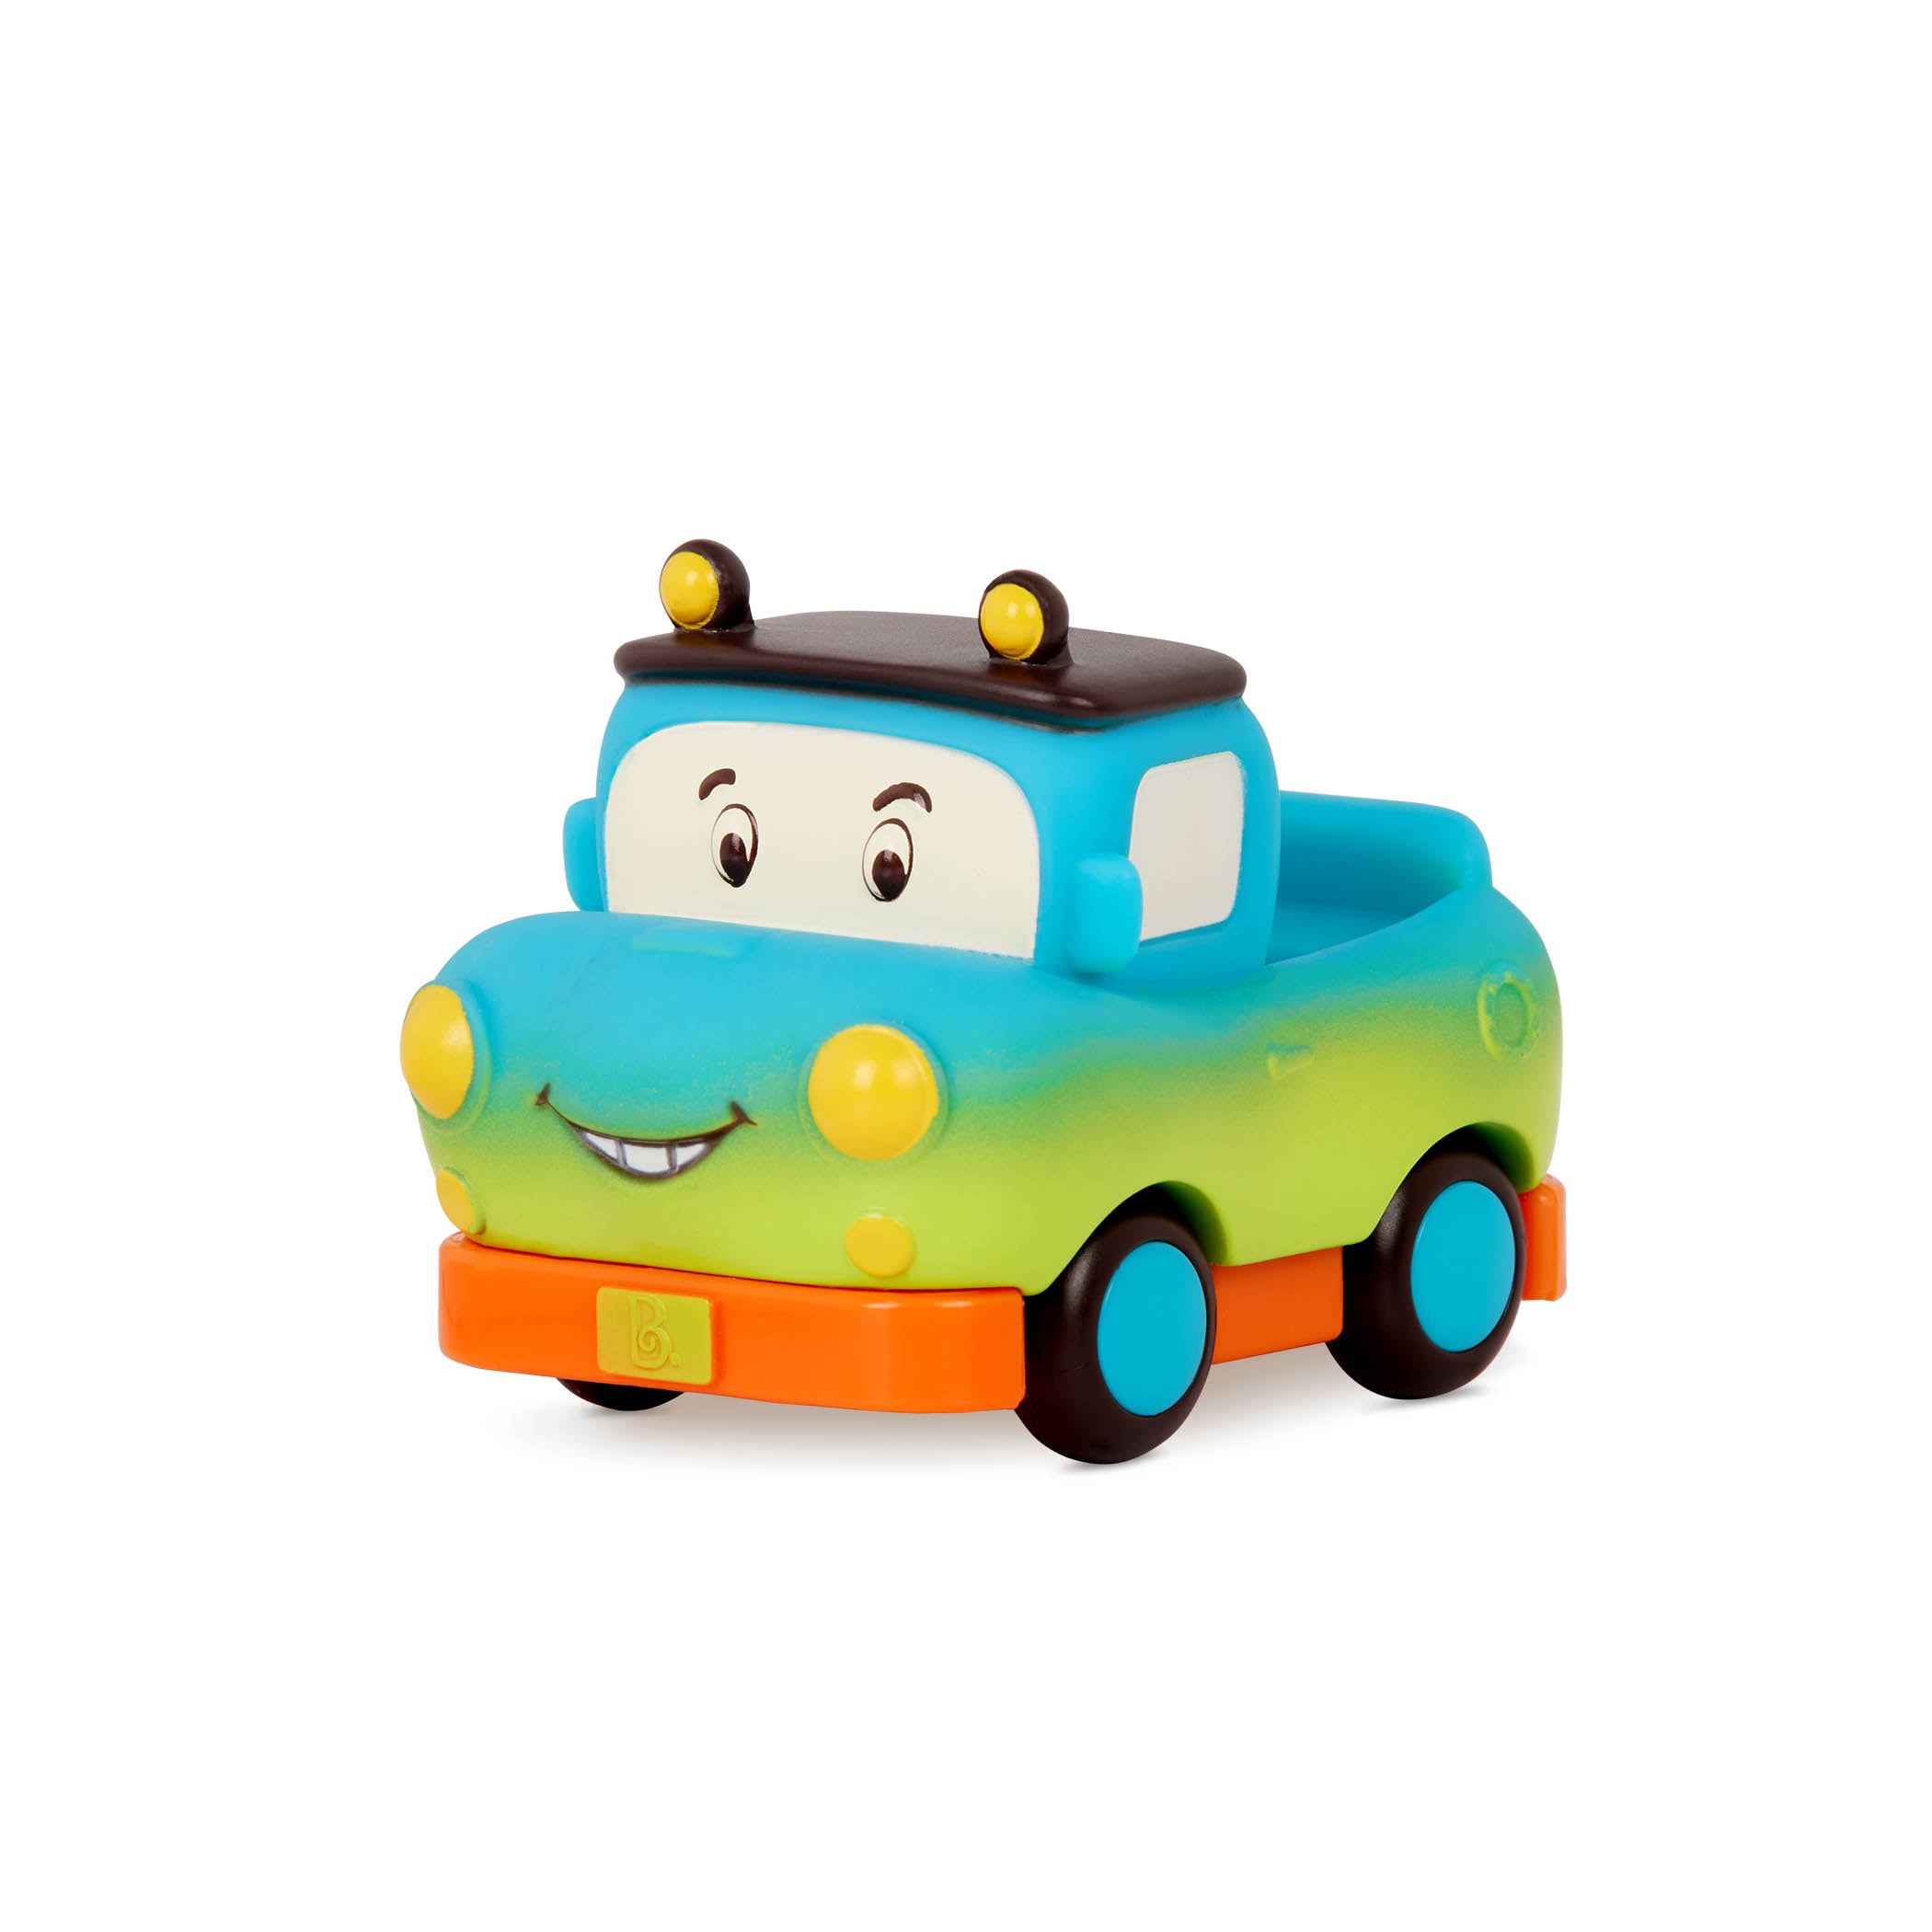 B.Tays: Mini Wheeeee-LS Car!